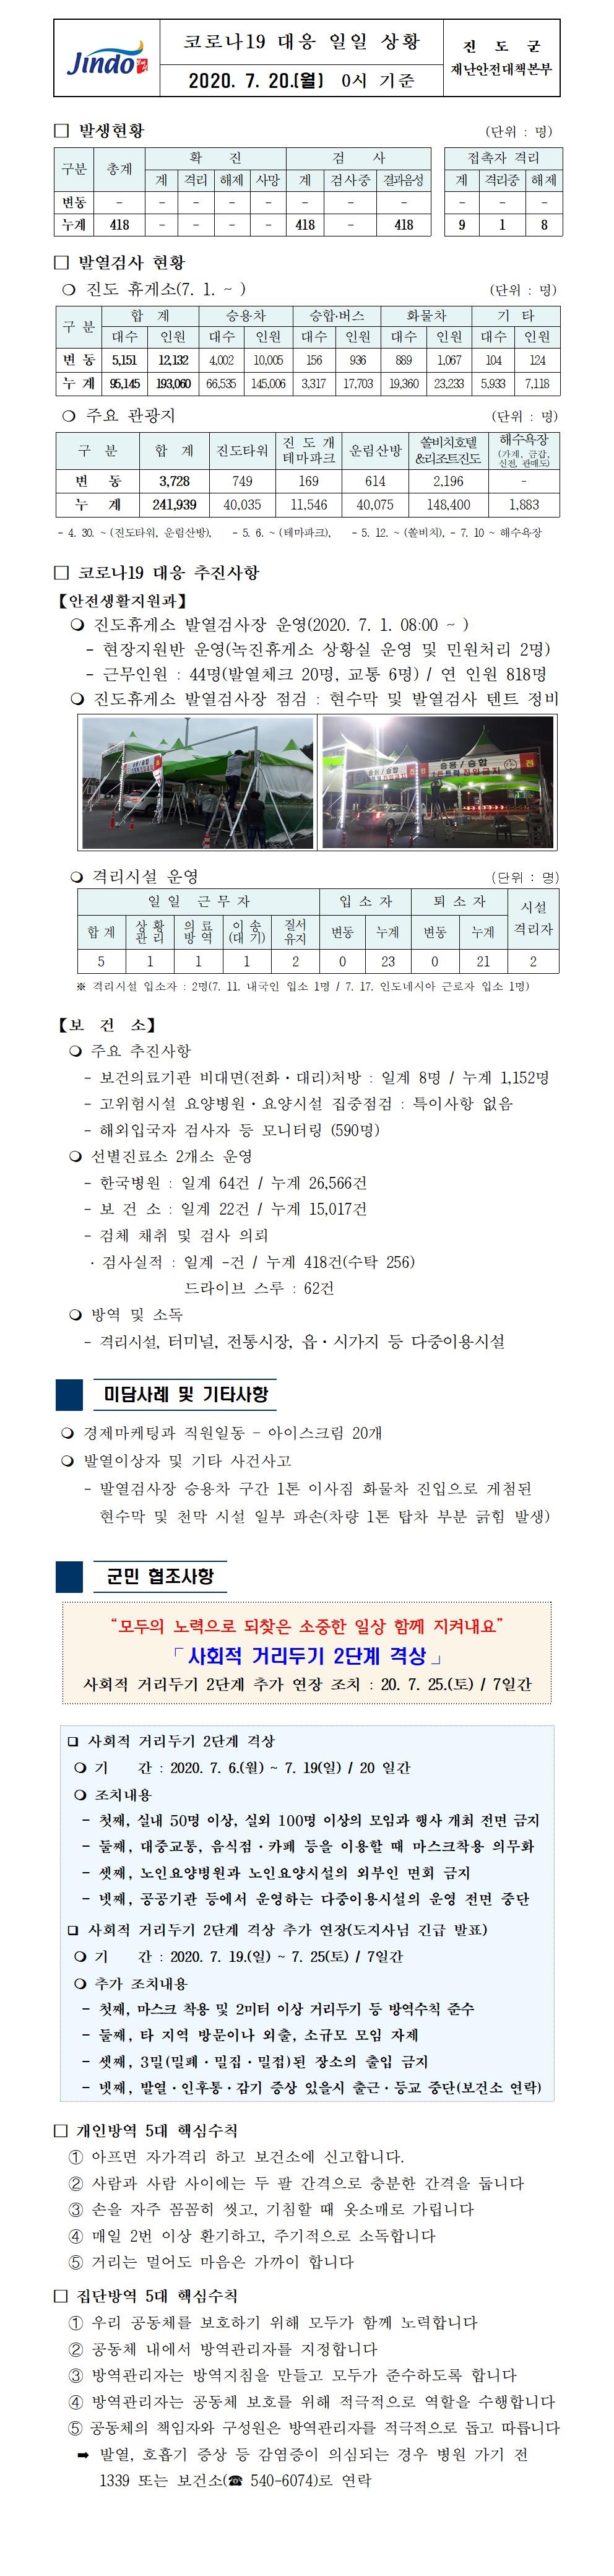 코로나19대응 일일 상황 보고(7월 20일 0시 기준) 첨부#1